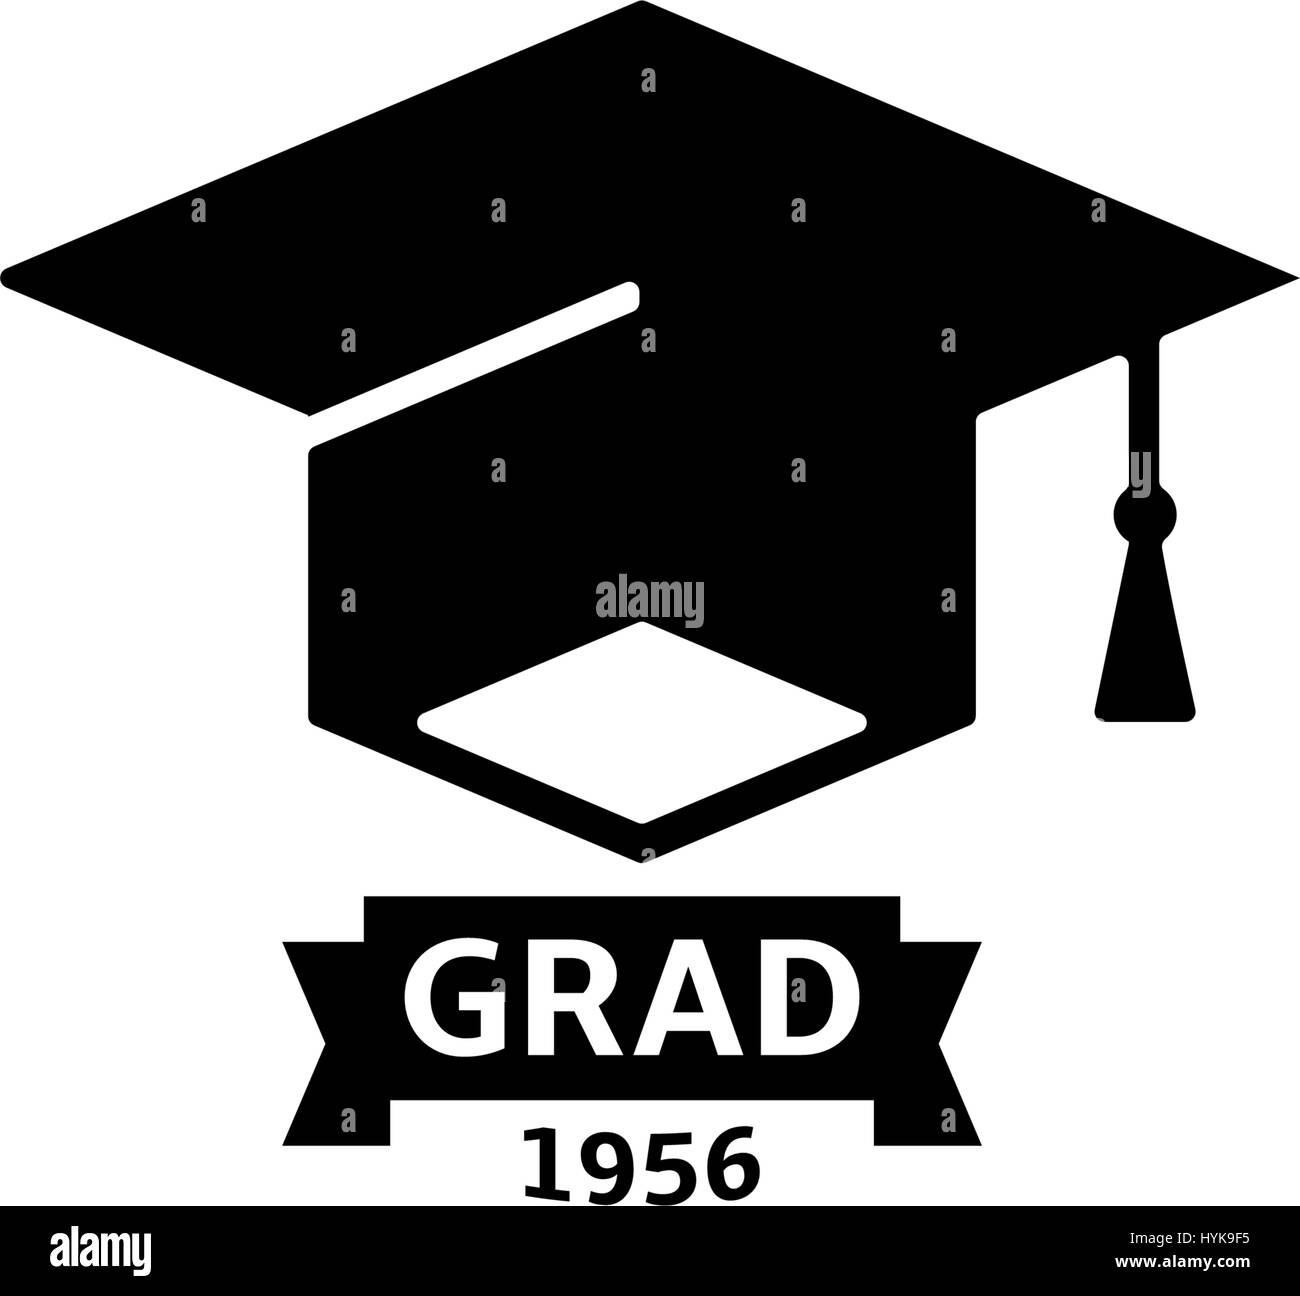 Isolierte schwarze und weiße Farbe Bachelor Hut mit Wort Grad Logo, Studenten Graduierung einheitlichen Logo, Bildung-Element-Vektor-illustration Stock Vektor